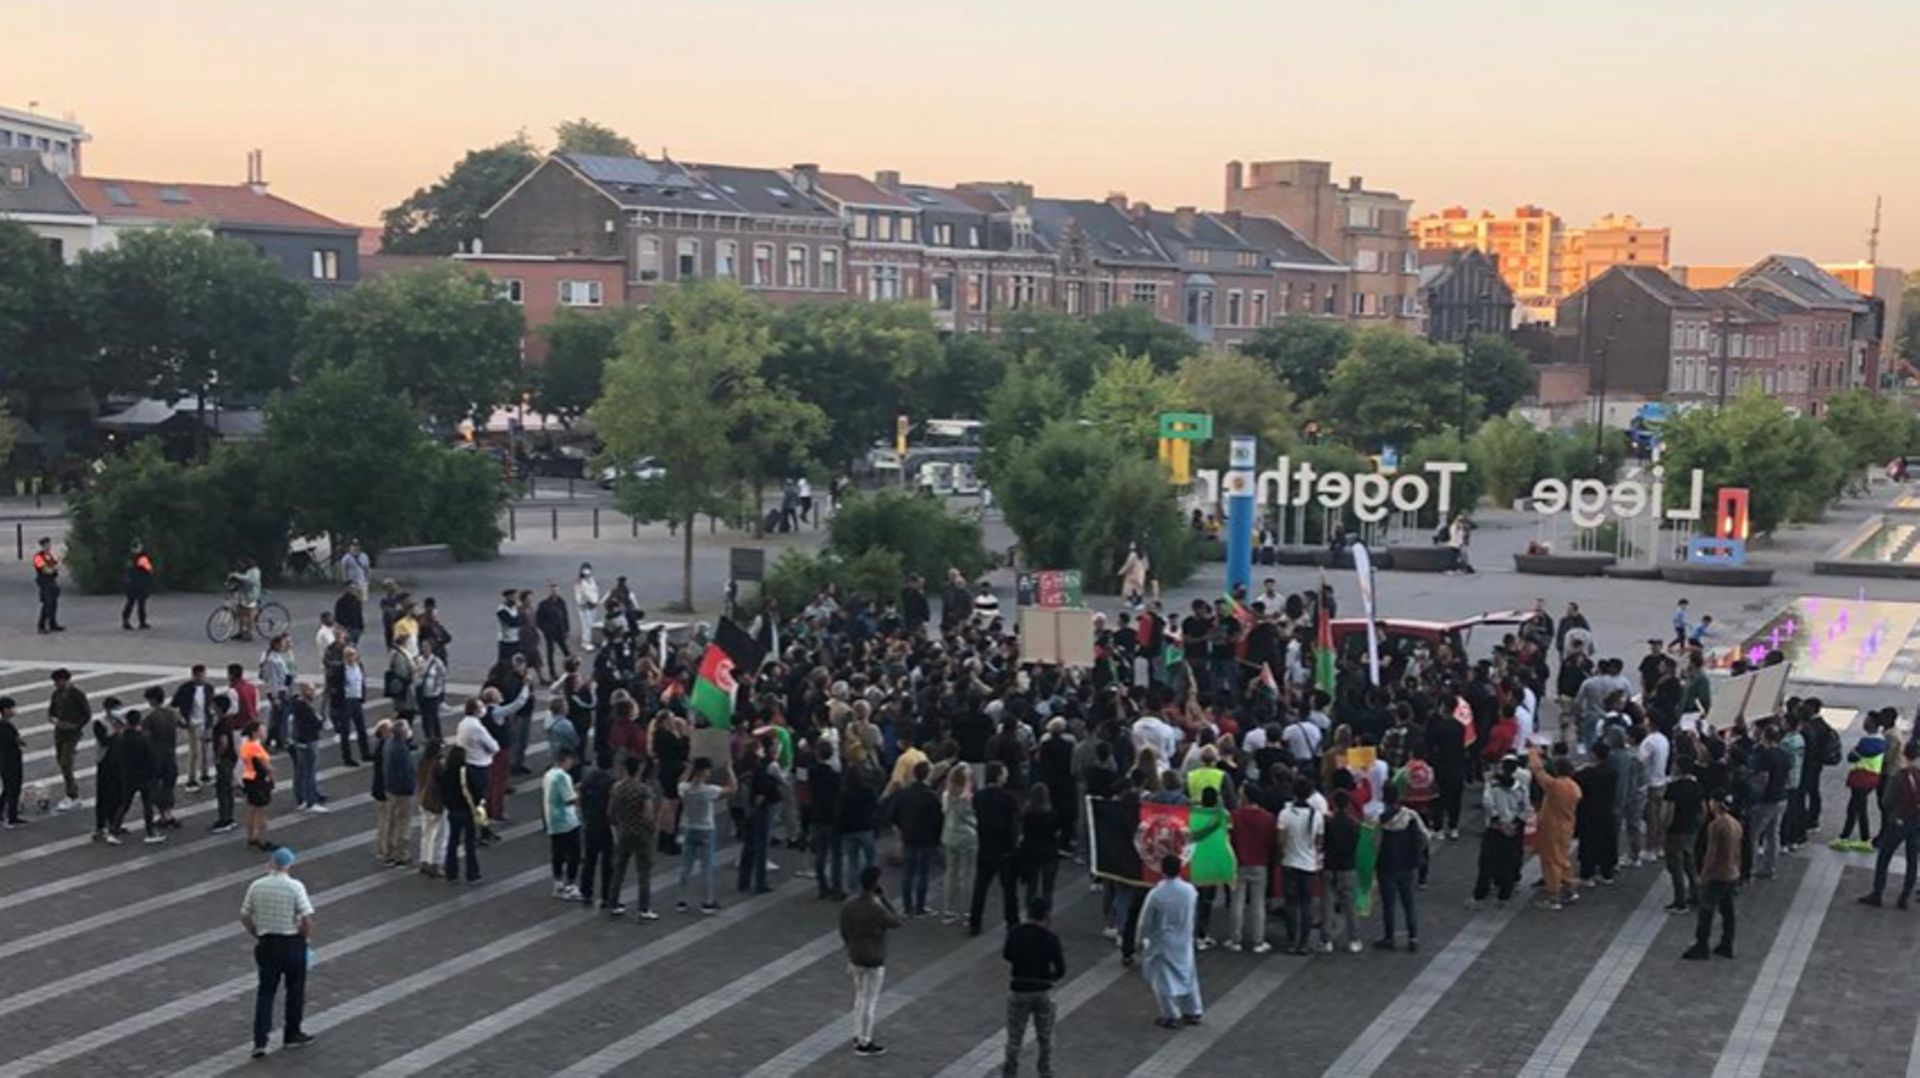 200 personnes ont manifesté à Liège pour l'amélioration du sort du peuple afghan